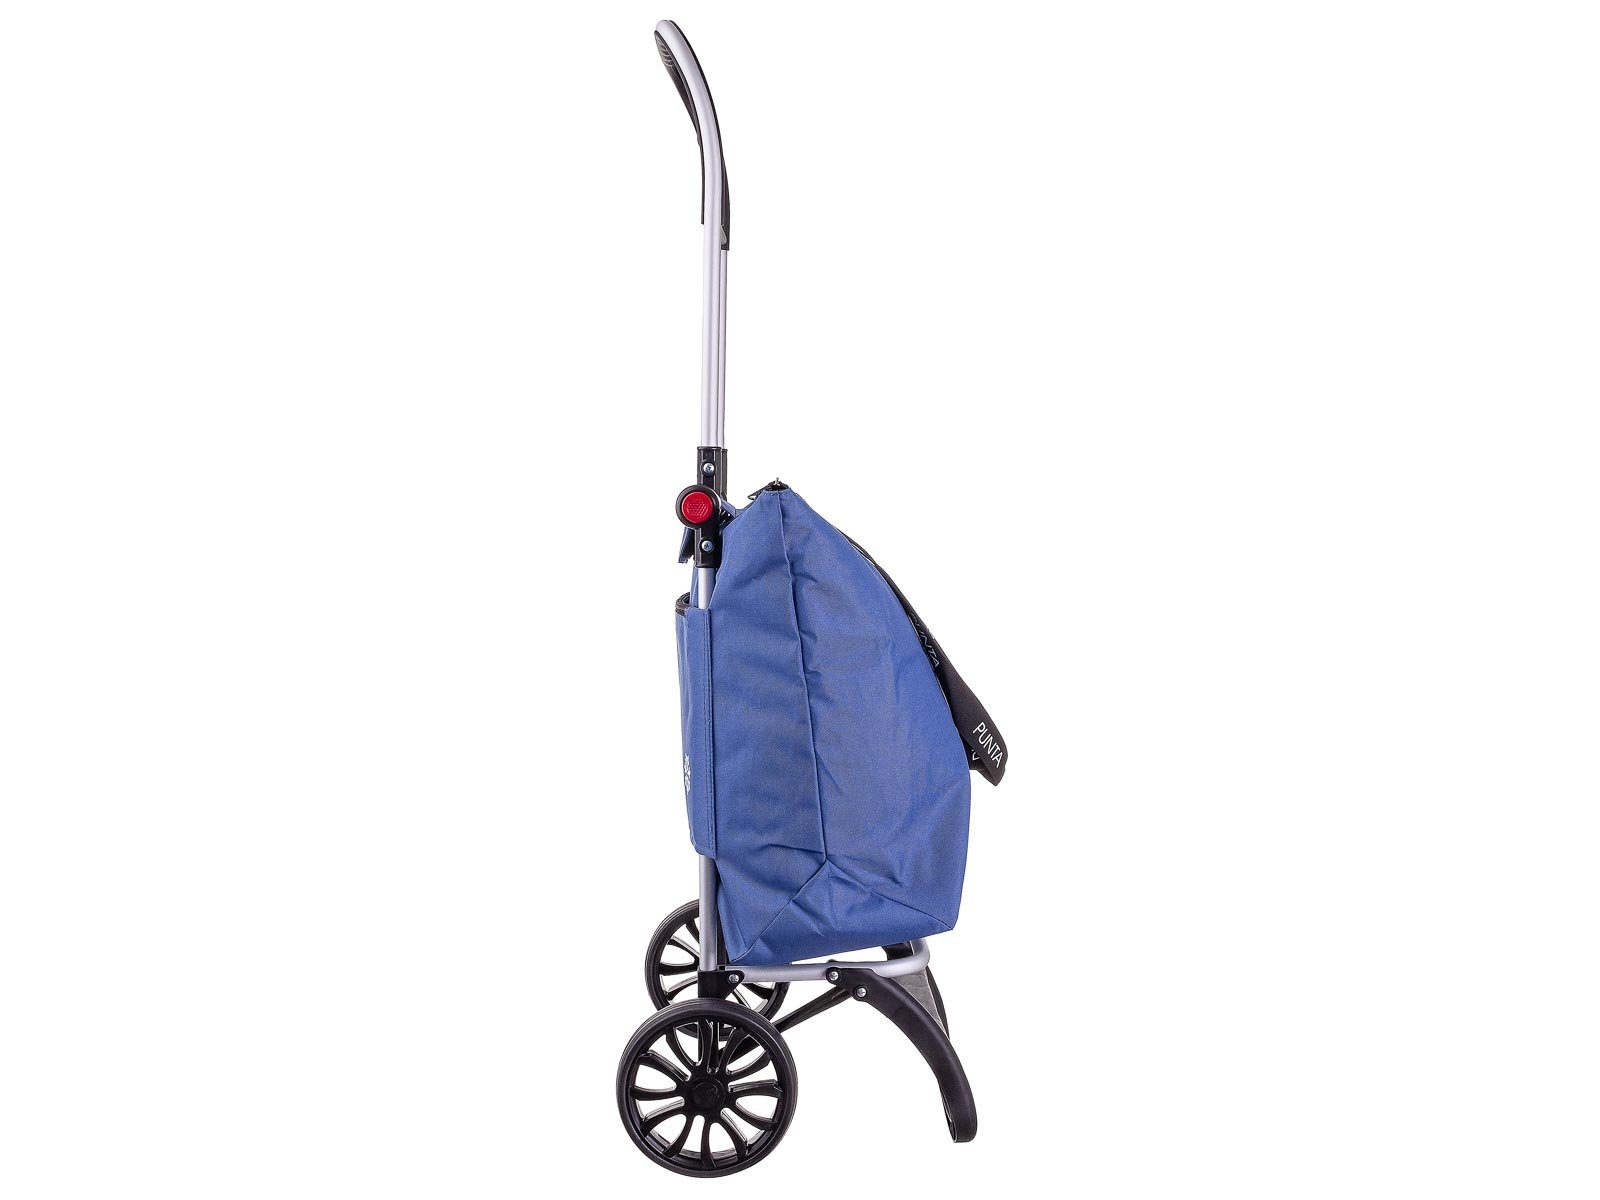 10430 36 l, Kühlfach, Kühlfach Punta graublau mit Alu-Shopper fabrizio® Einkaufstrolley caddy